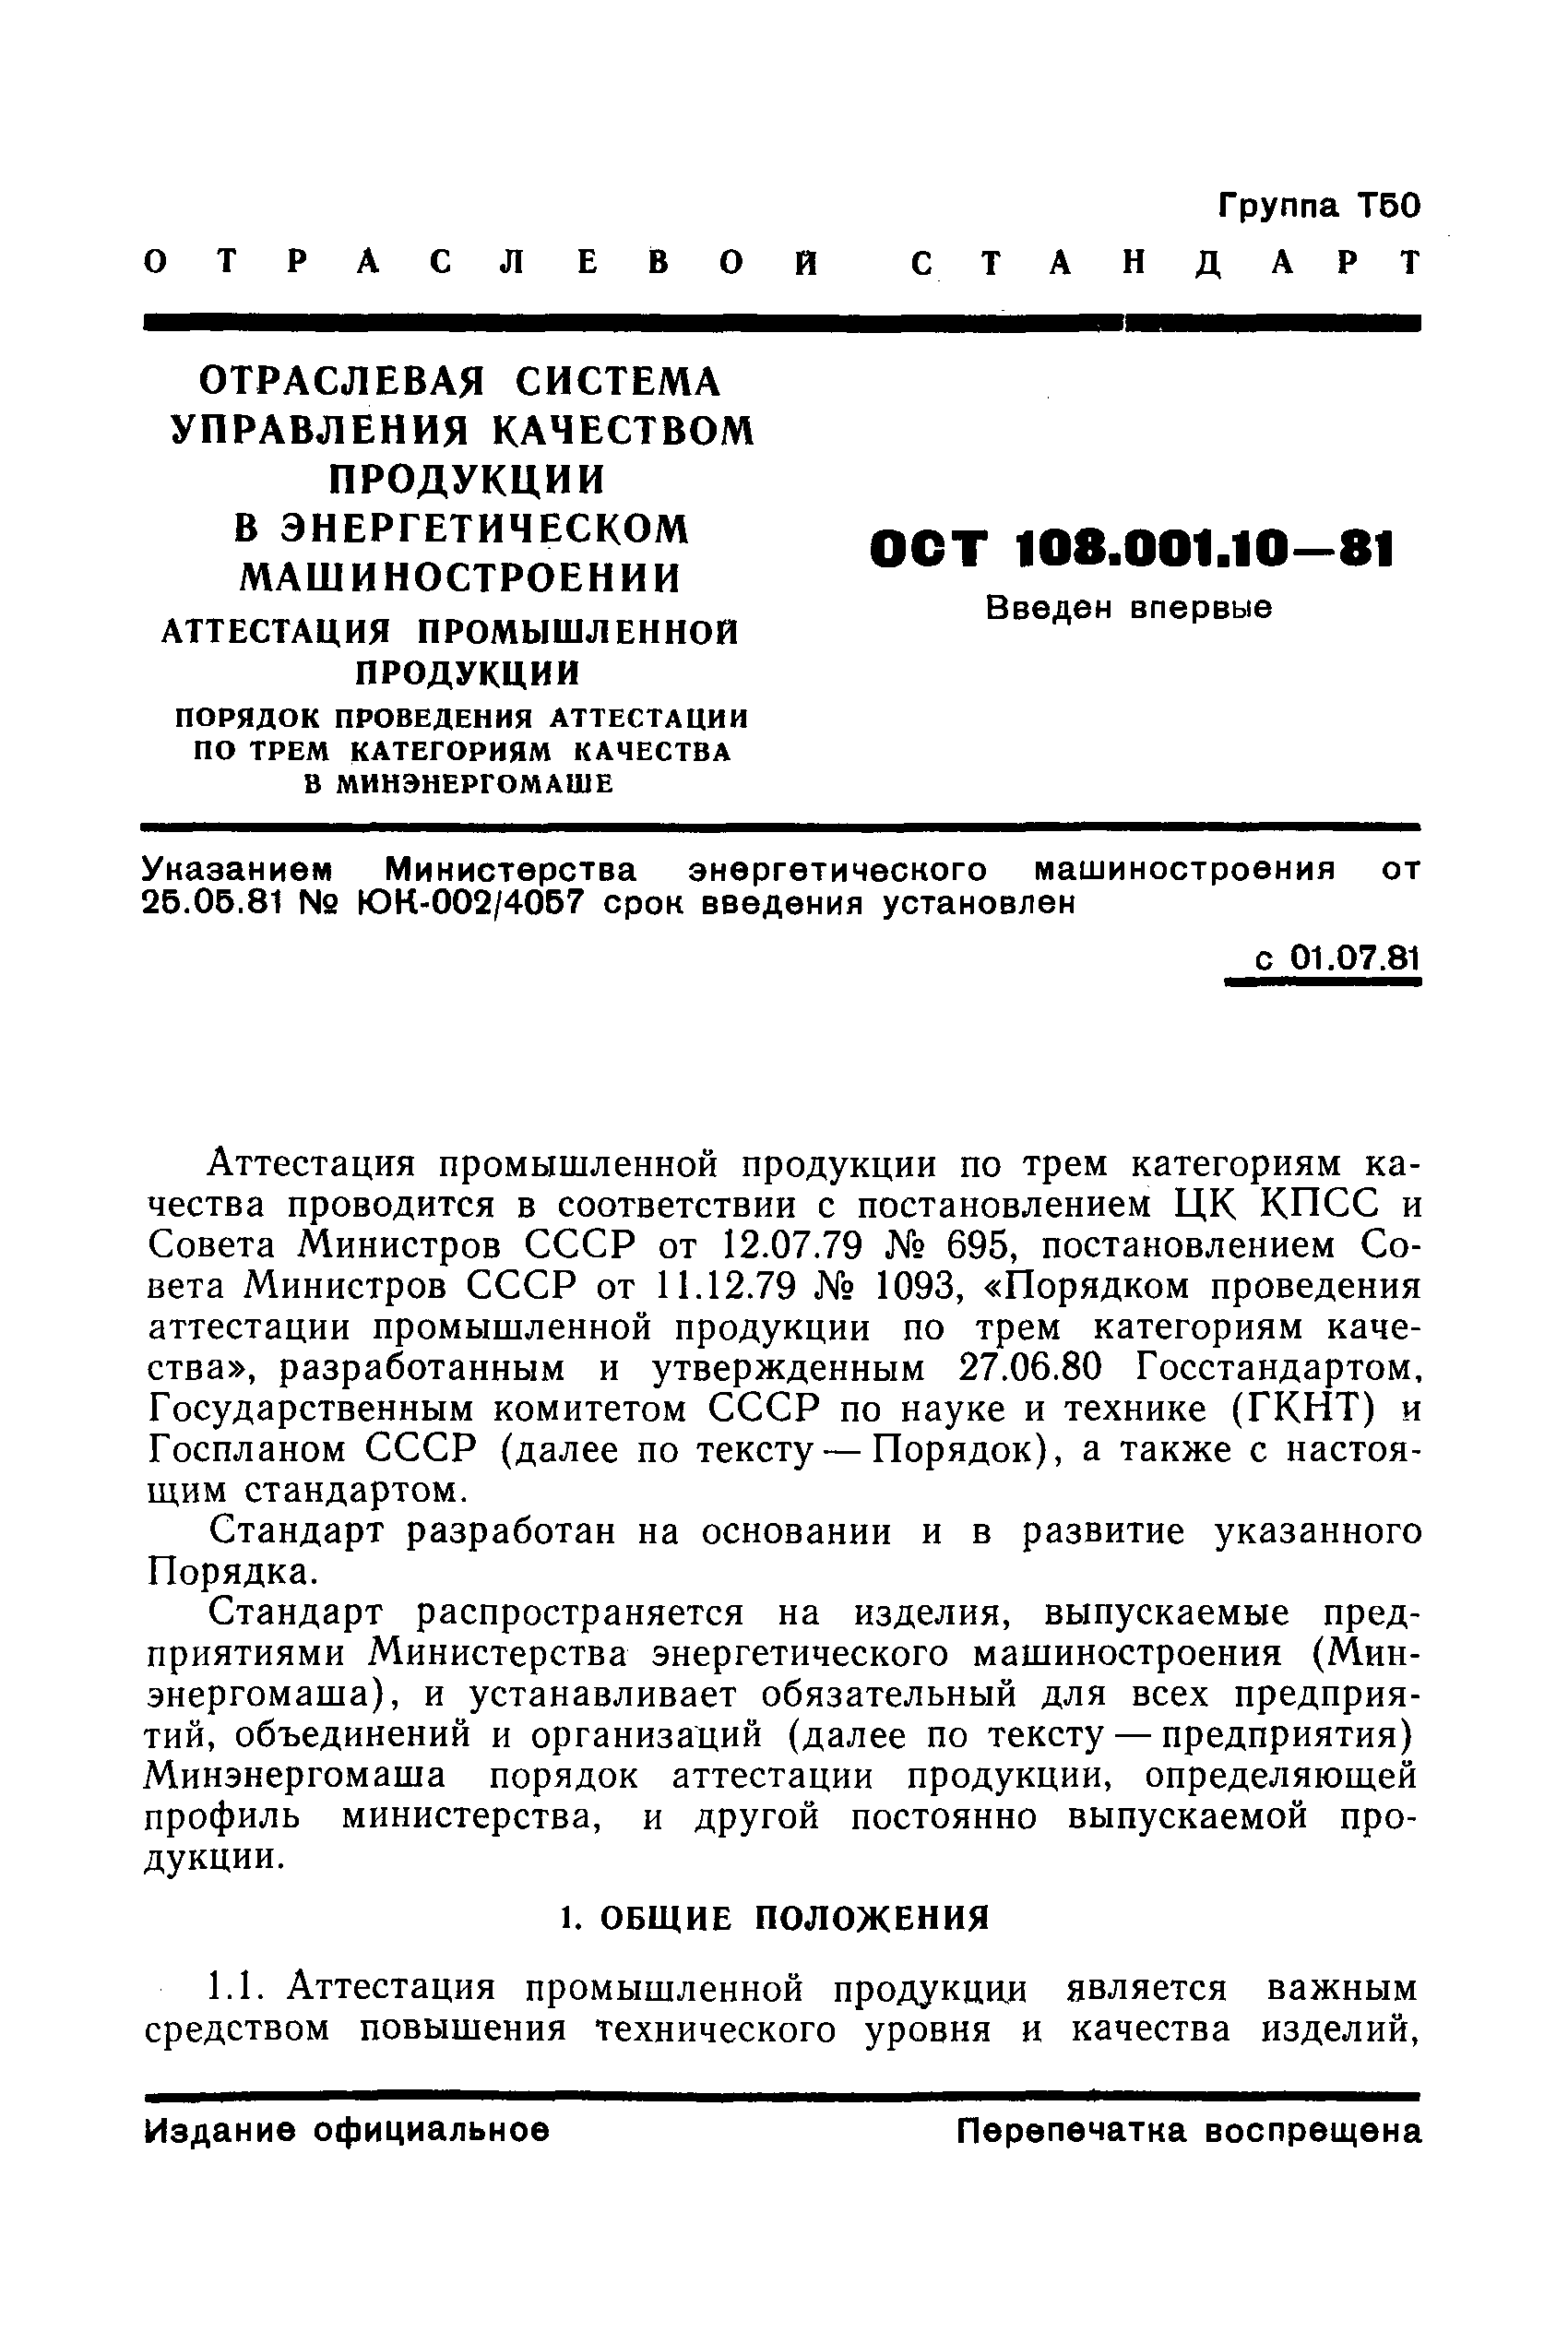 ОСТ 108.001.10-81